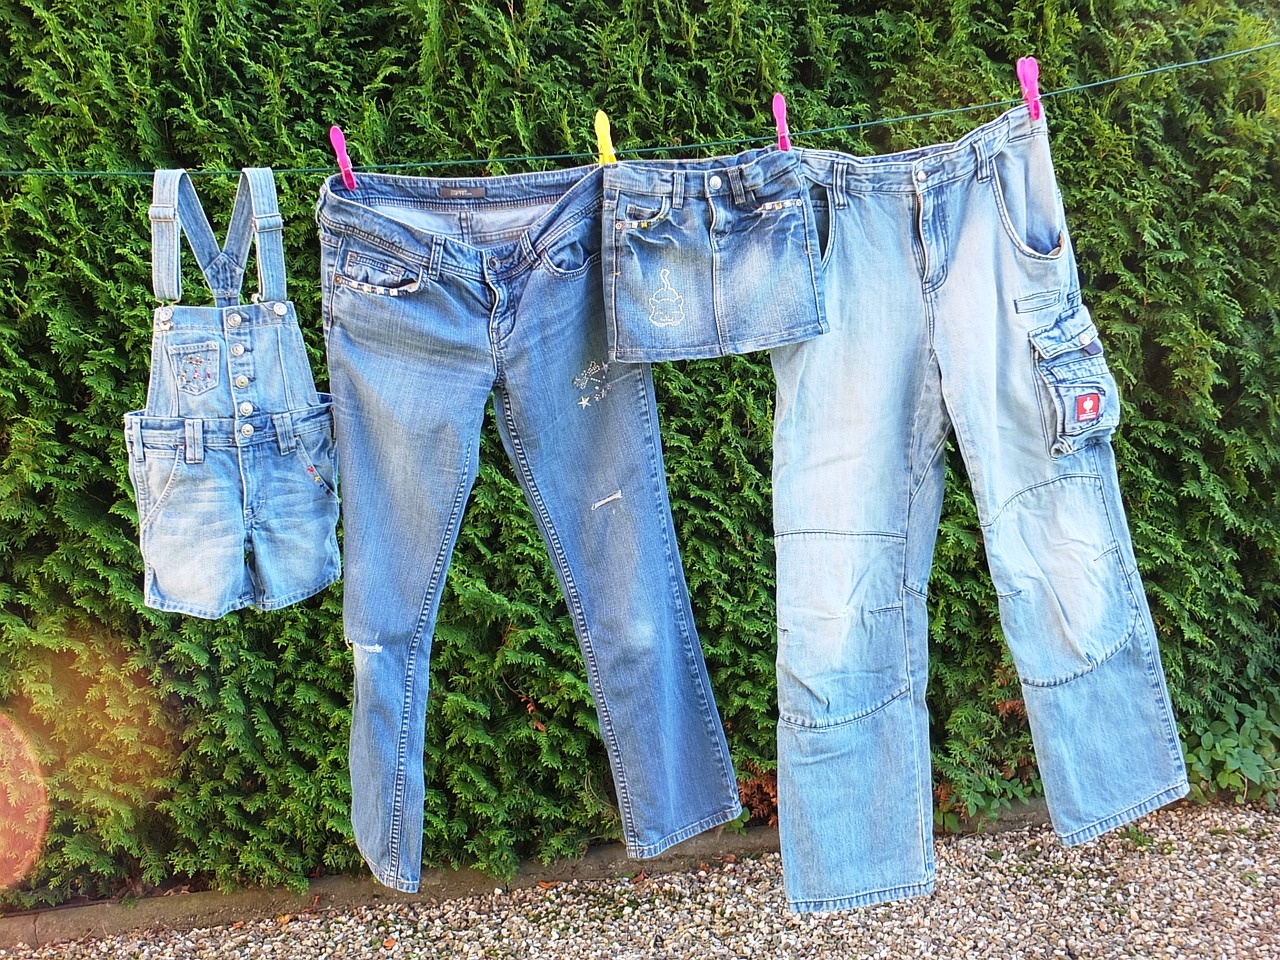 Где найти джинсы определенной модели, если на сайте производителя они уже распроданы?